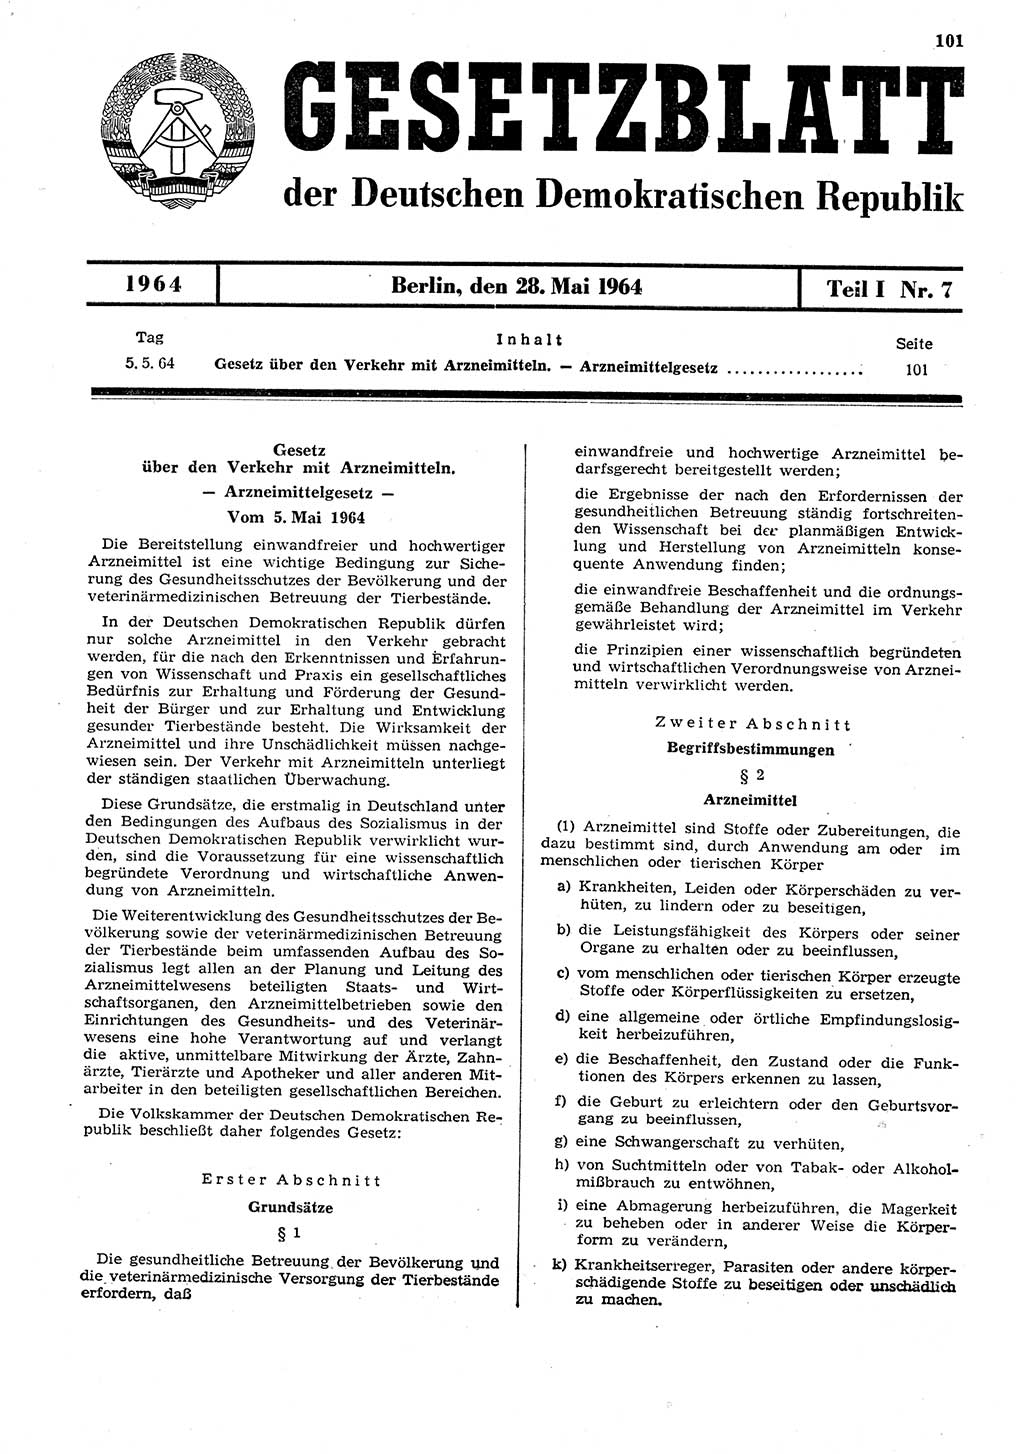 Gesetzblatt (GBl.) der Deutschen Demokratischen Republik (DDR) Teil Ⅰ 1964, Seite 101 (GBl. DDR Ⅰ 1964, S. 101)